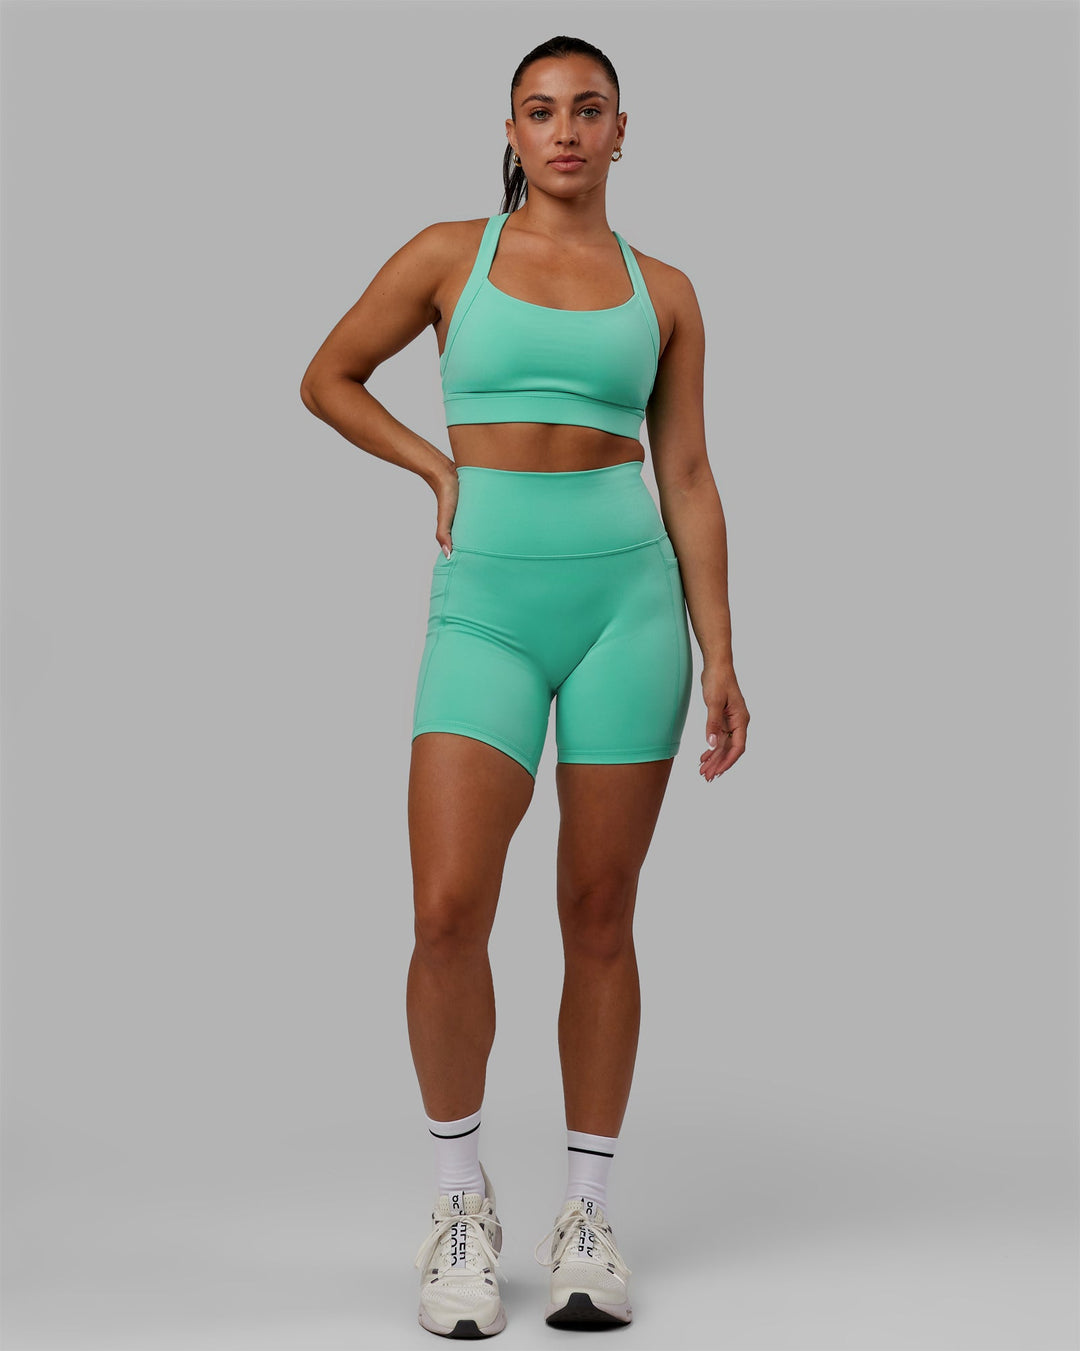 Woman wearing Fusion Mid-Length Shorts - Aquatic Awe